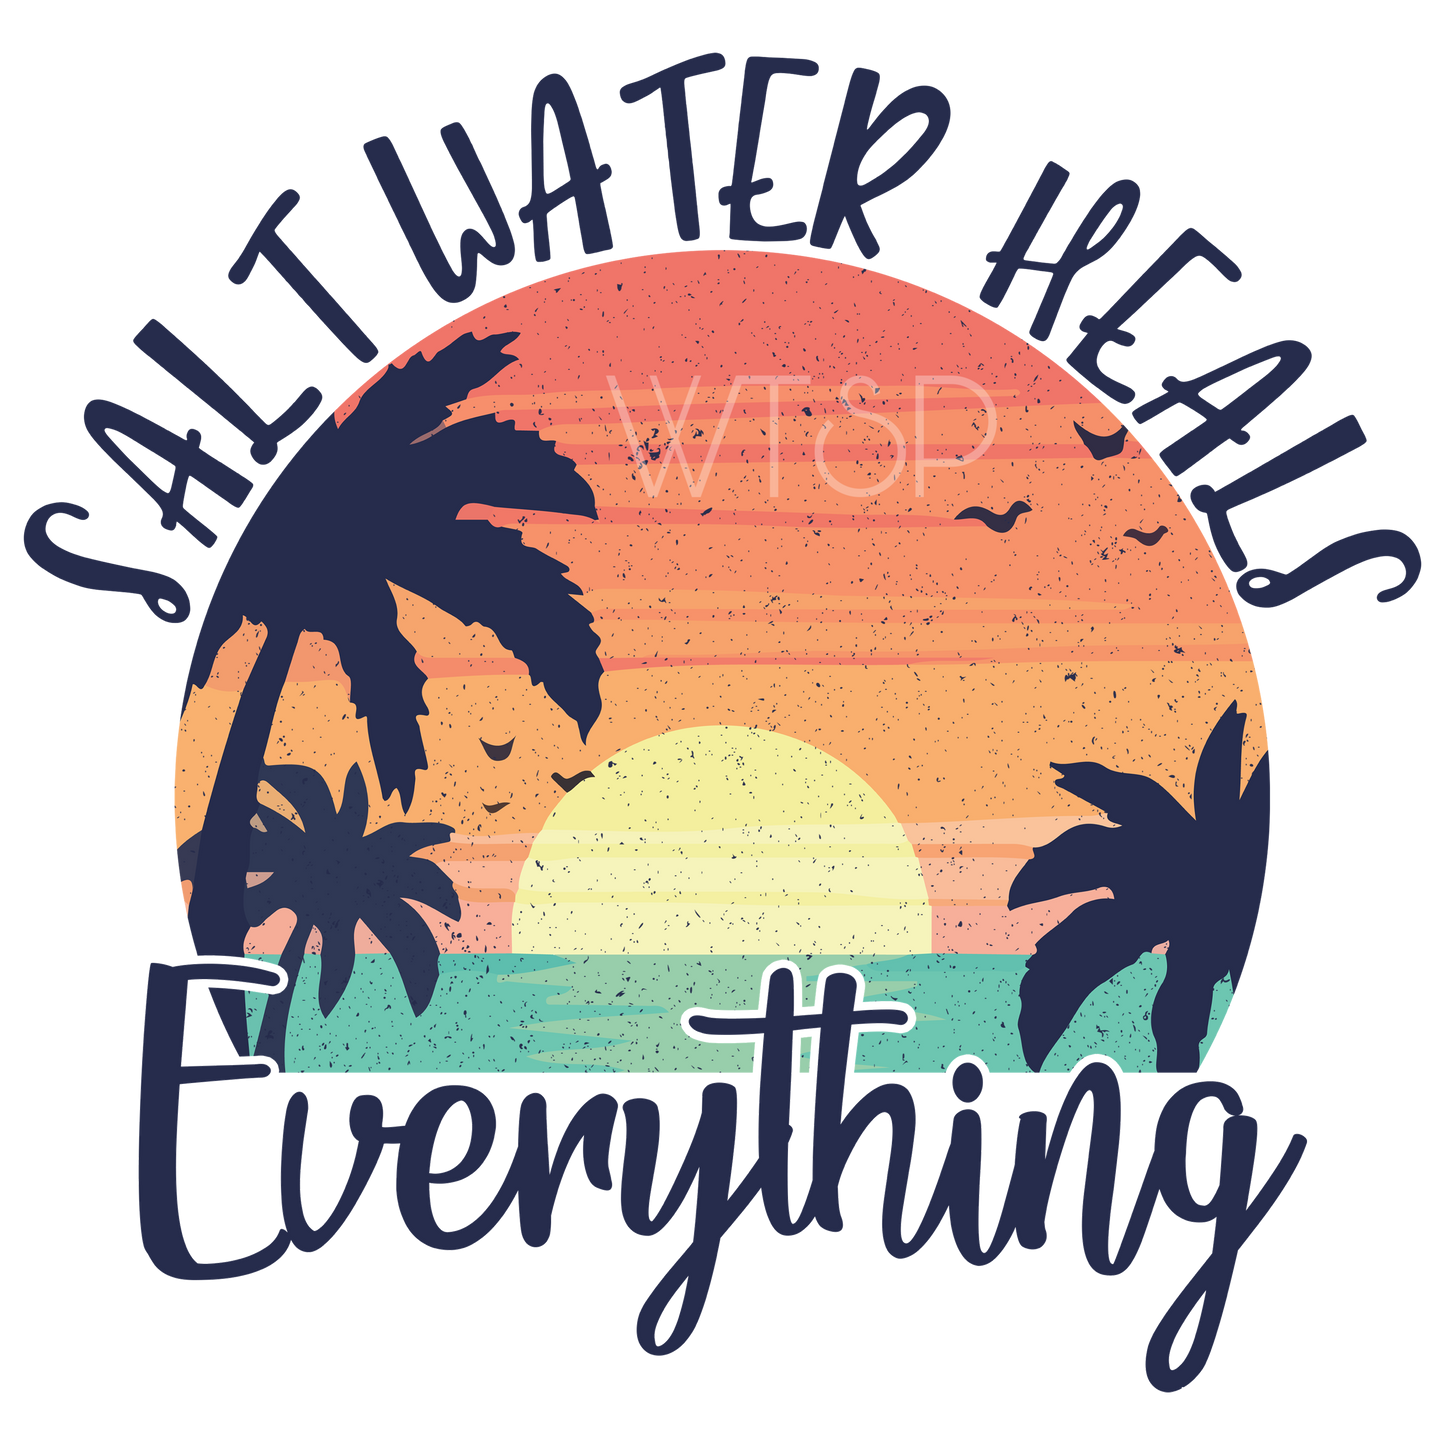 Salt water heals everything